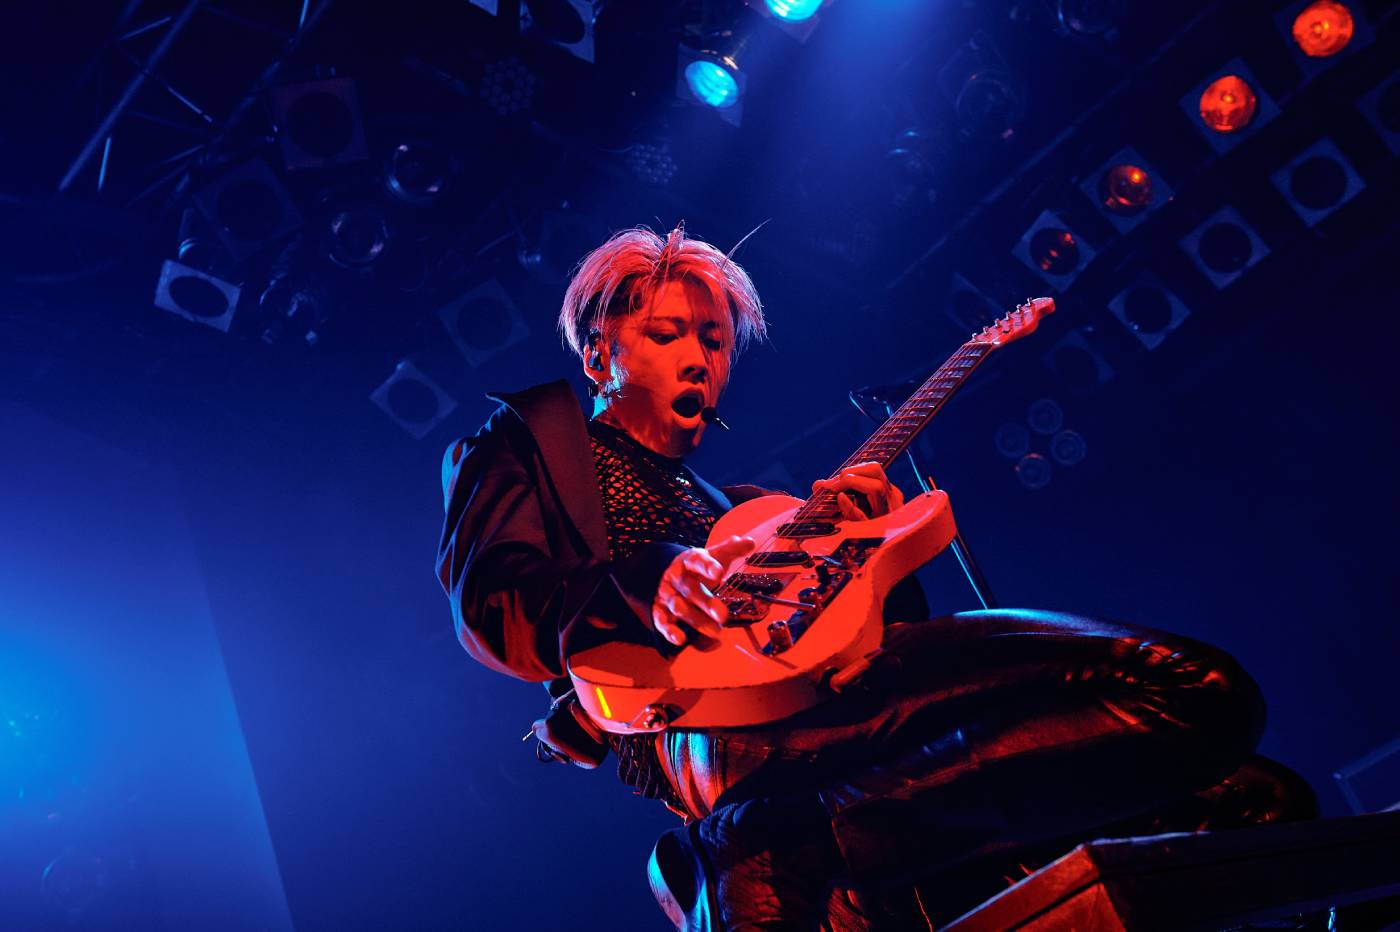 【ライブレポート】MIYAVI20th記念ライブ追加公演に幕「ずっとステージに立っていたい」 アルバムリリースも発表